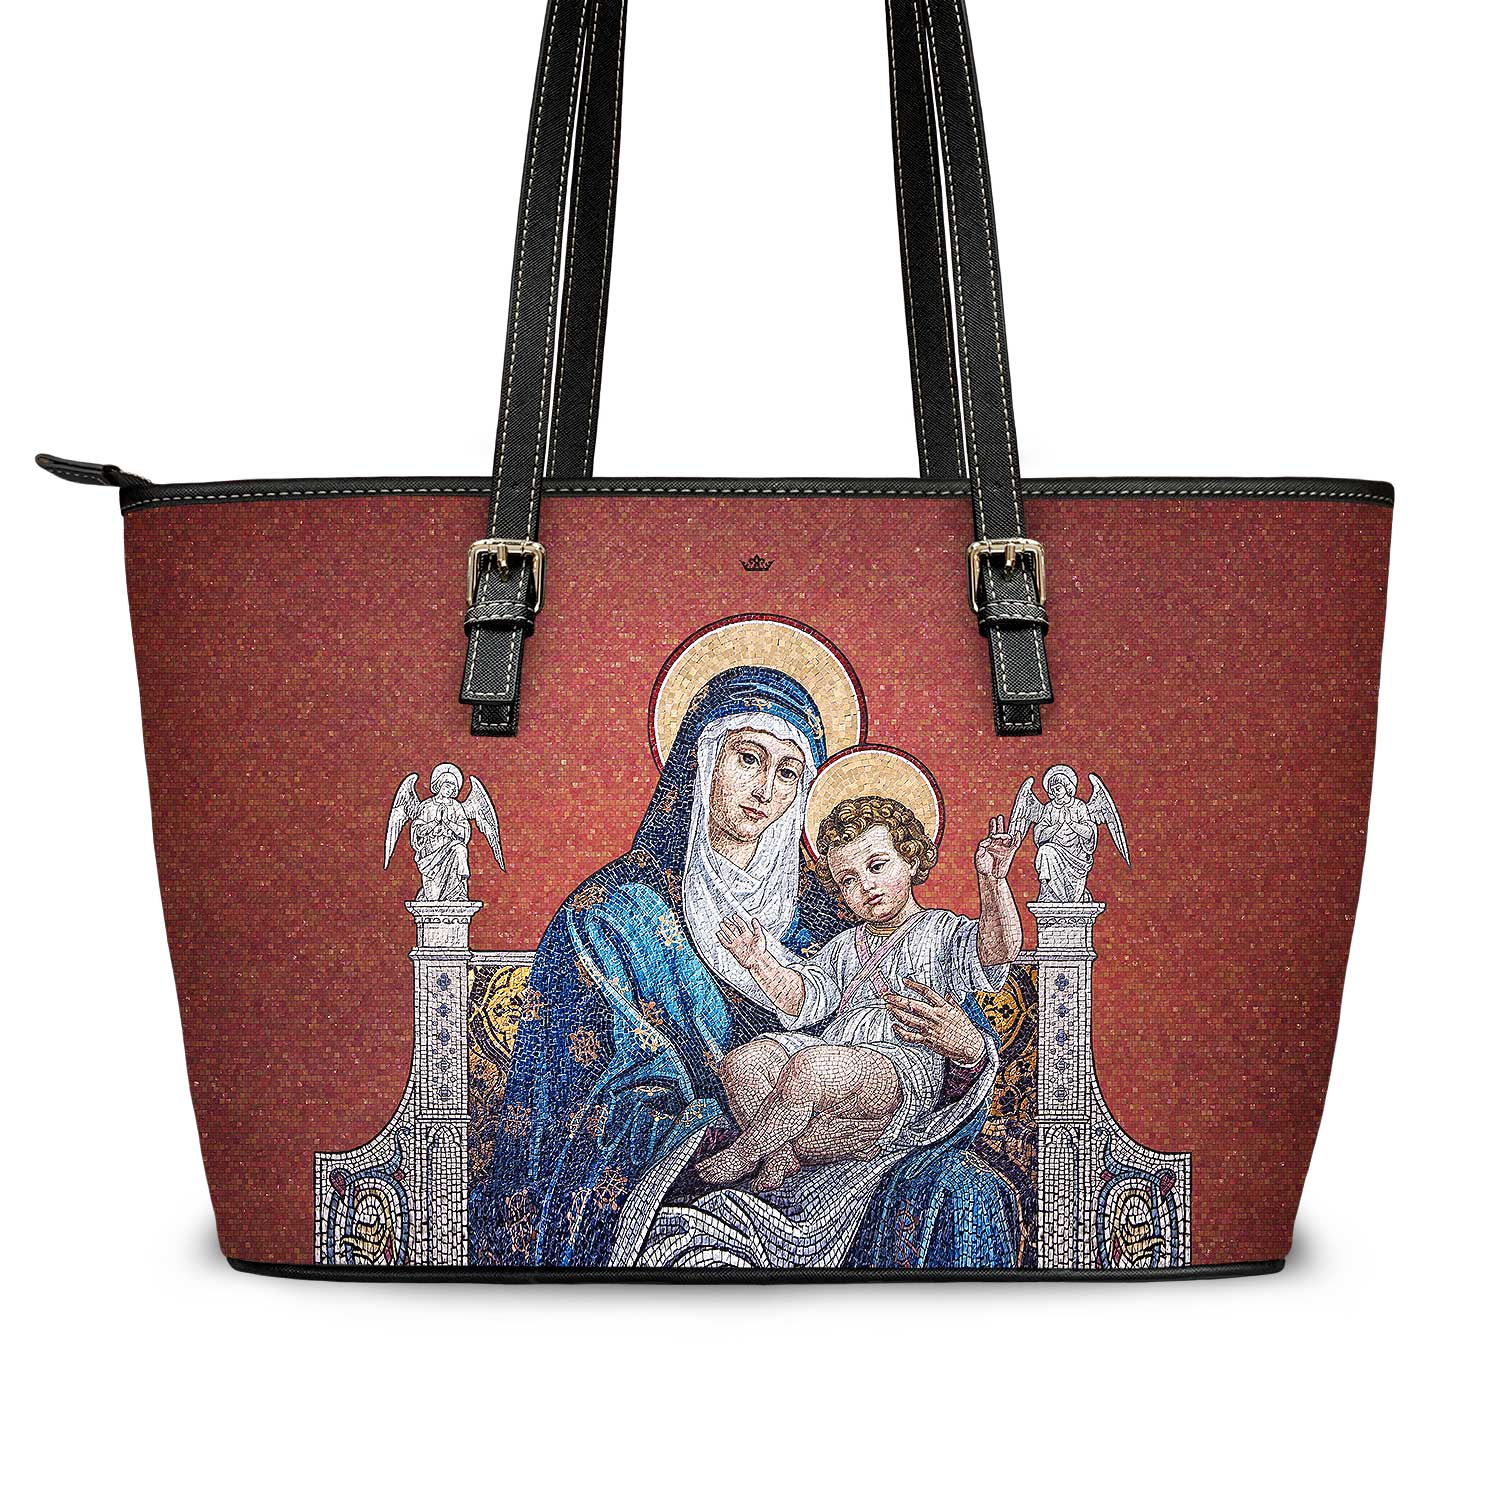 Mosaic Madonna and Child Tote Bag (Royal Red) - VENXARA®